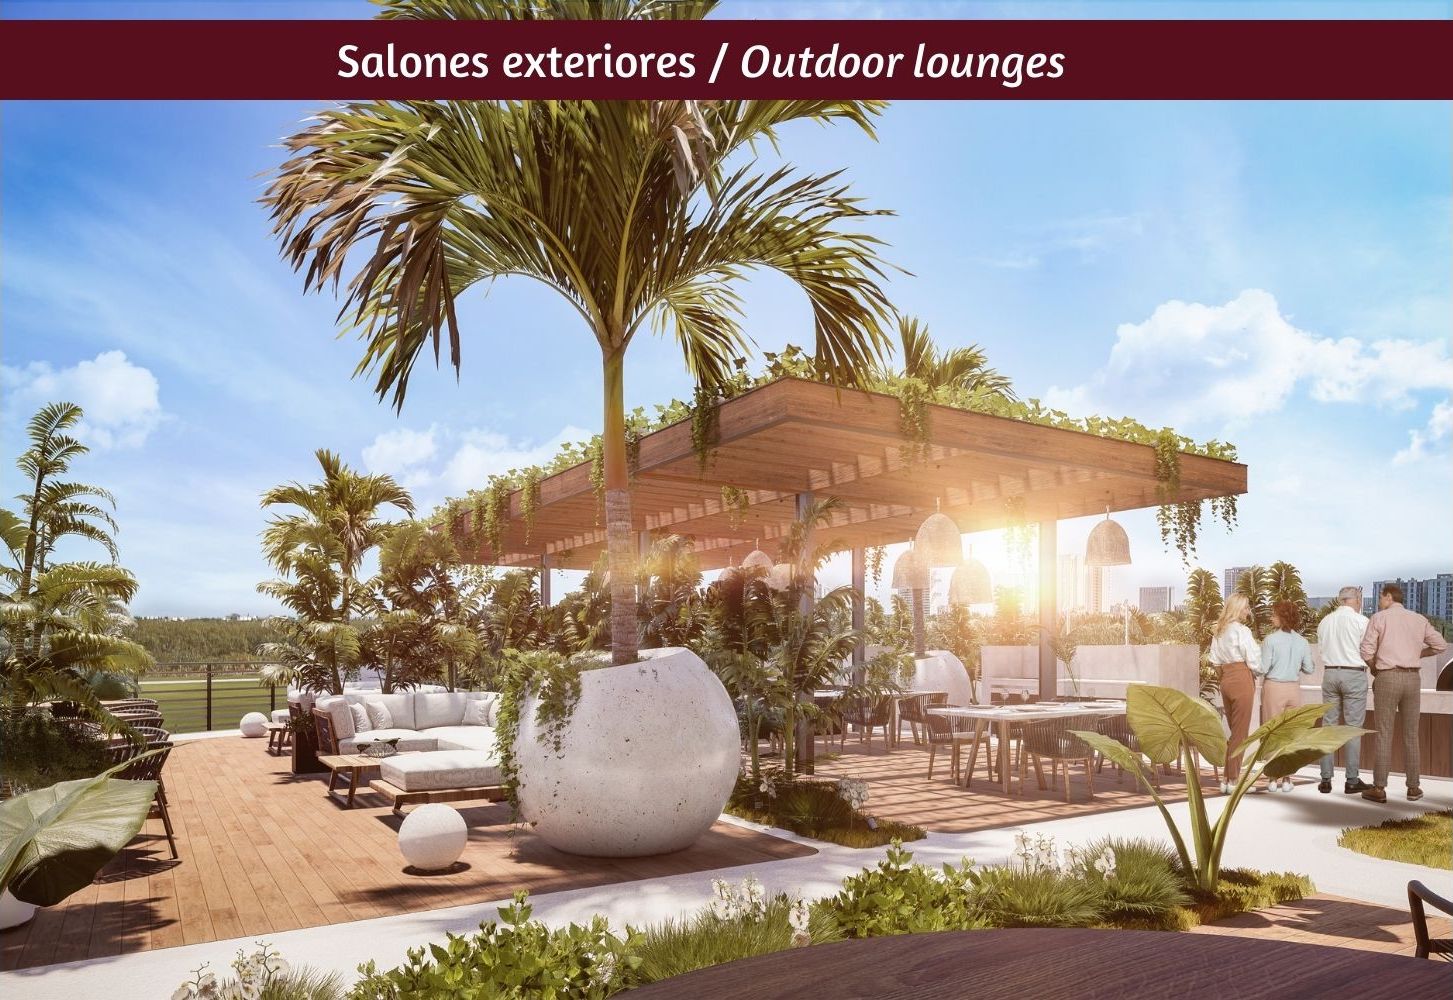 Departamento con vista panorámica, alberca infinity, jacuzzi, snack bar,  cuarto de servicio, pre-construccion, Puerto Cancun.